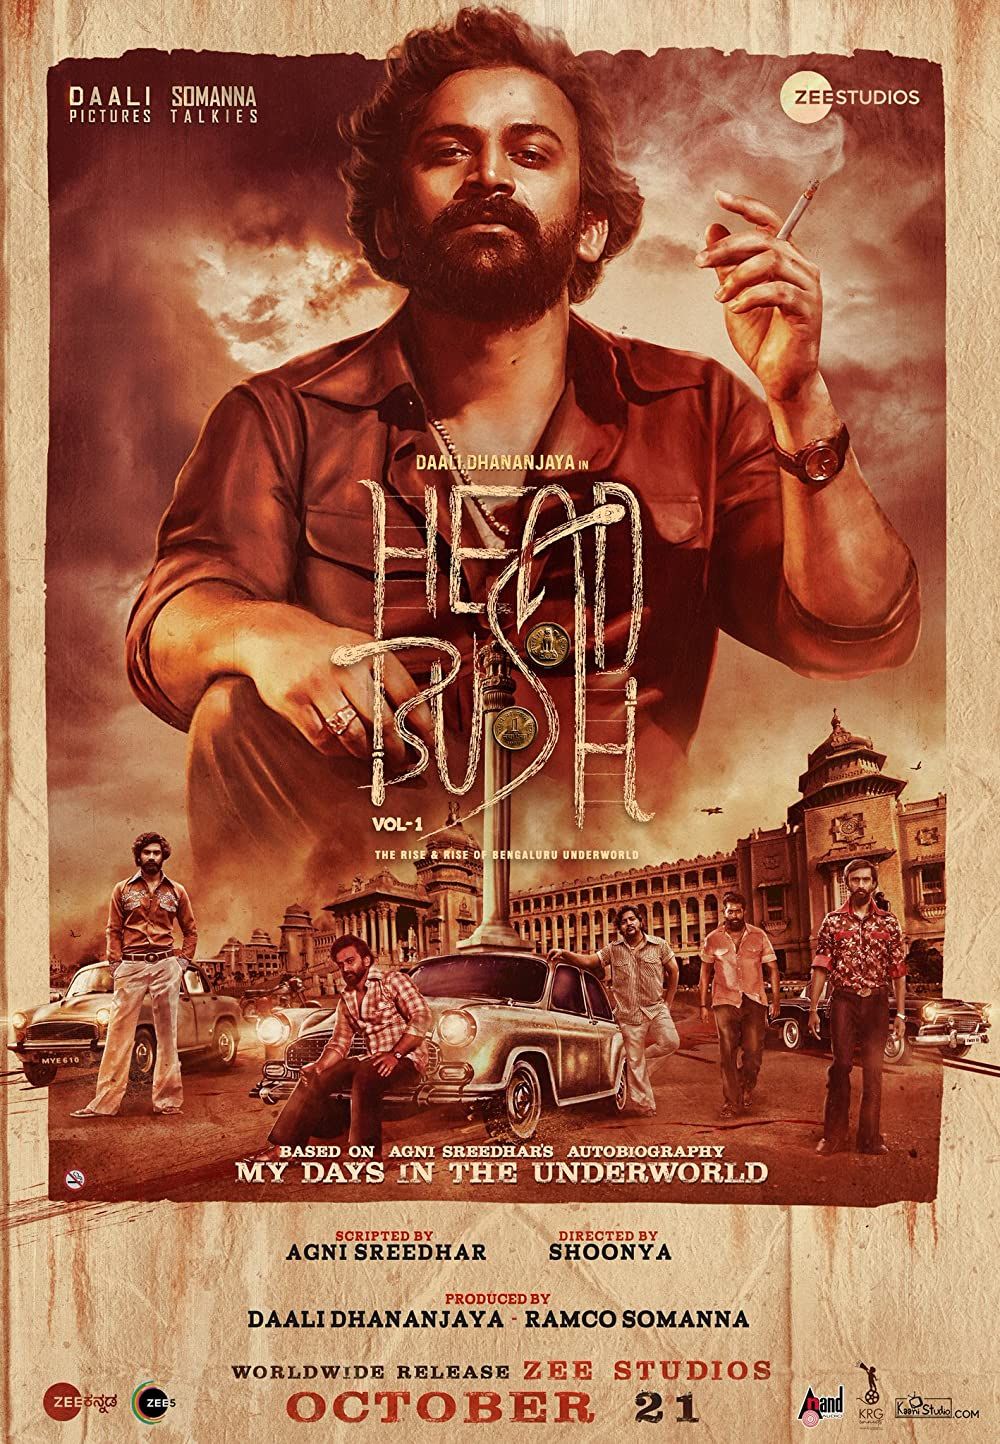 Head Bush Vol 1 2022 Hindi (HQ Dubbed) PreDVDRip download full movie